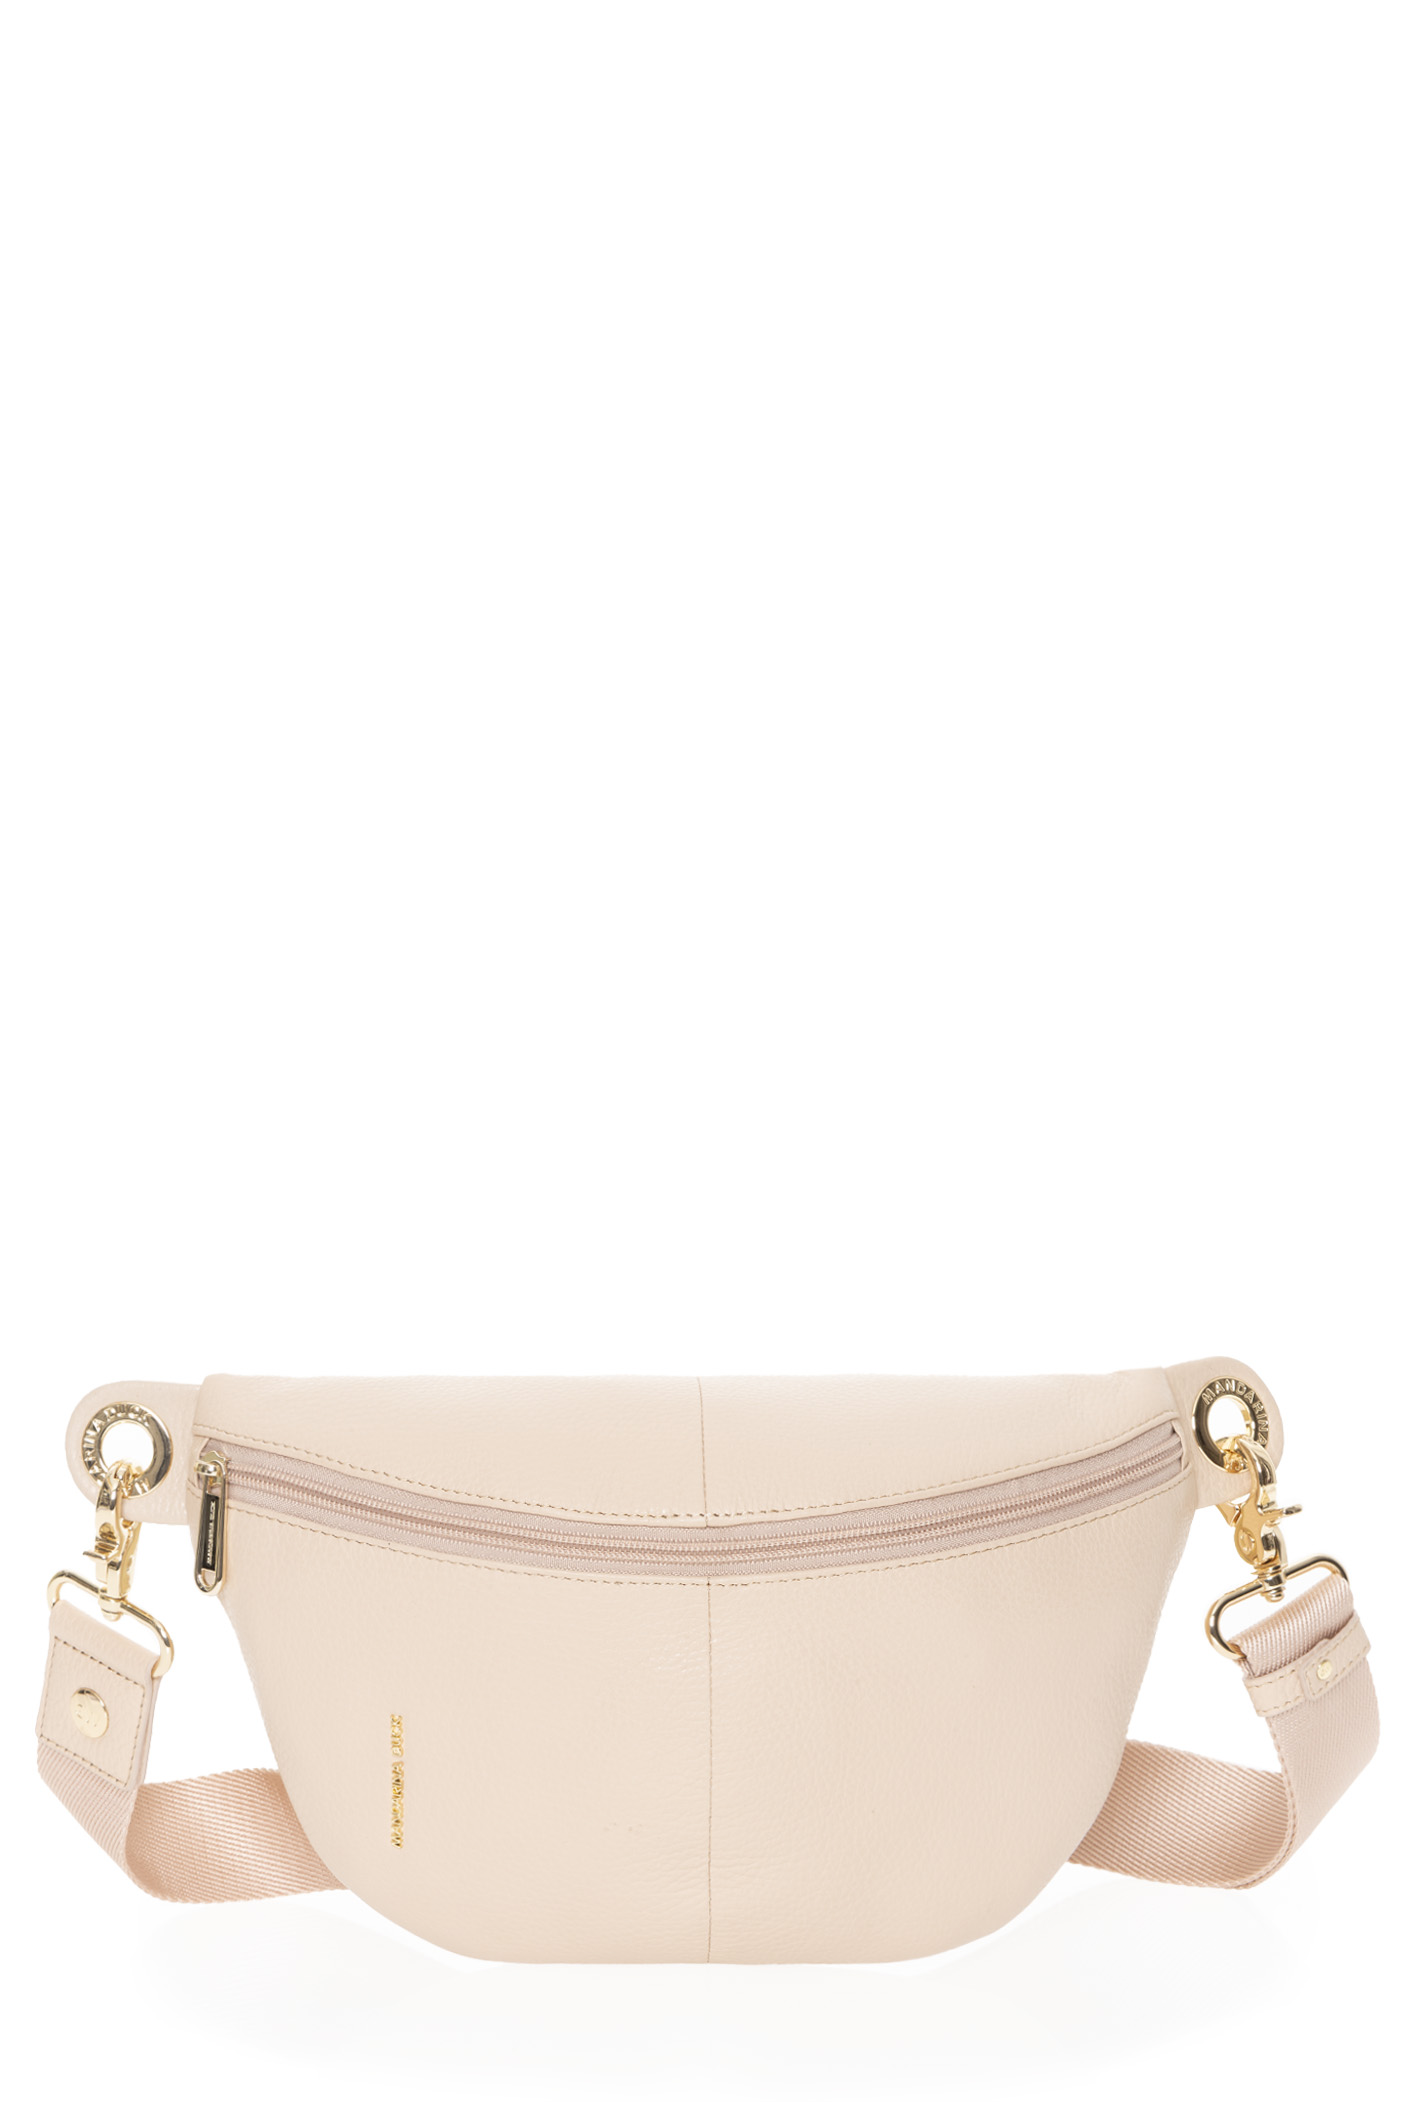 XL Fanny Pack Handbag Belt Bag Genuine Leather Brown -  Denmark